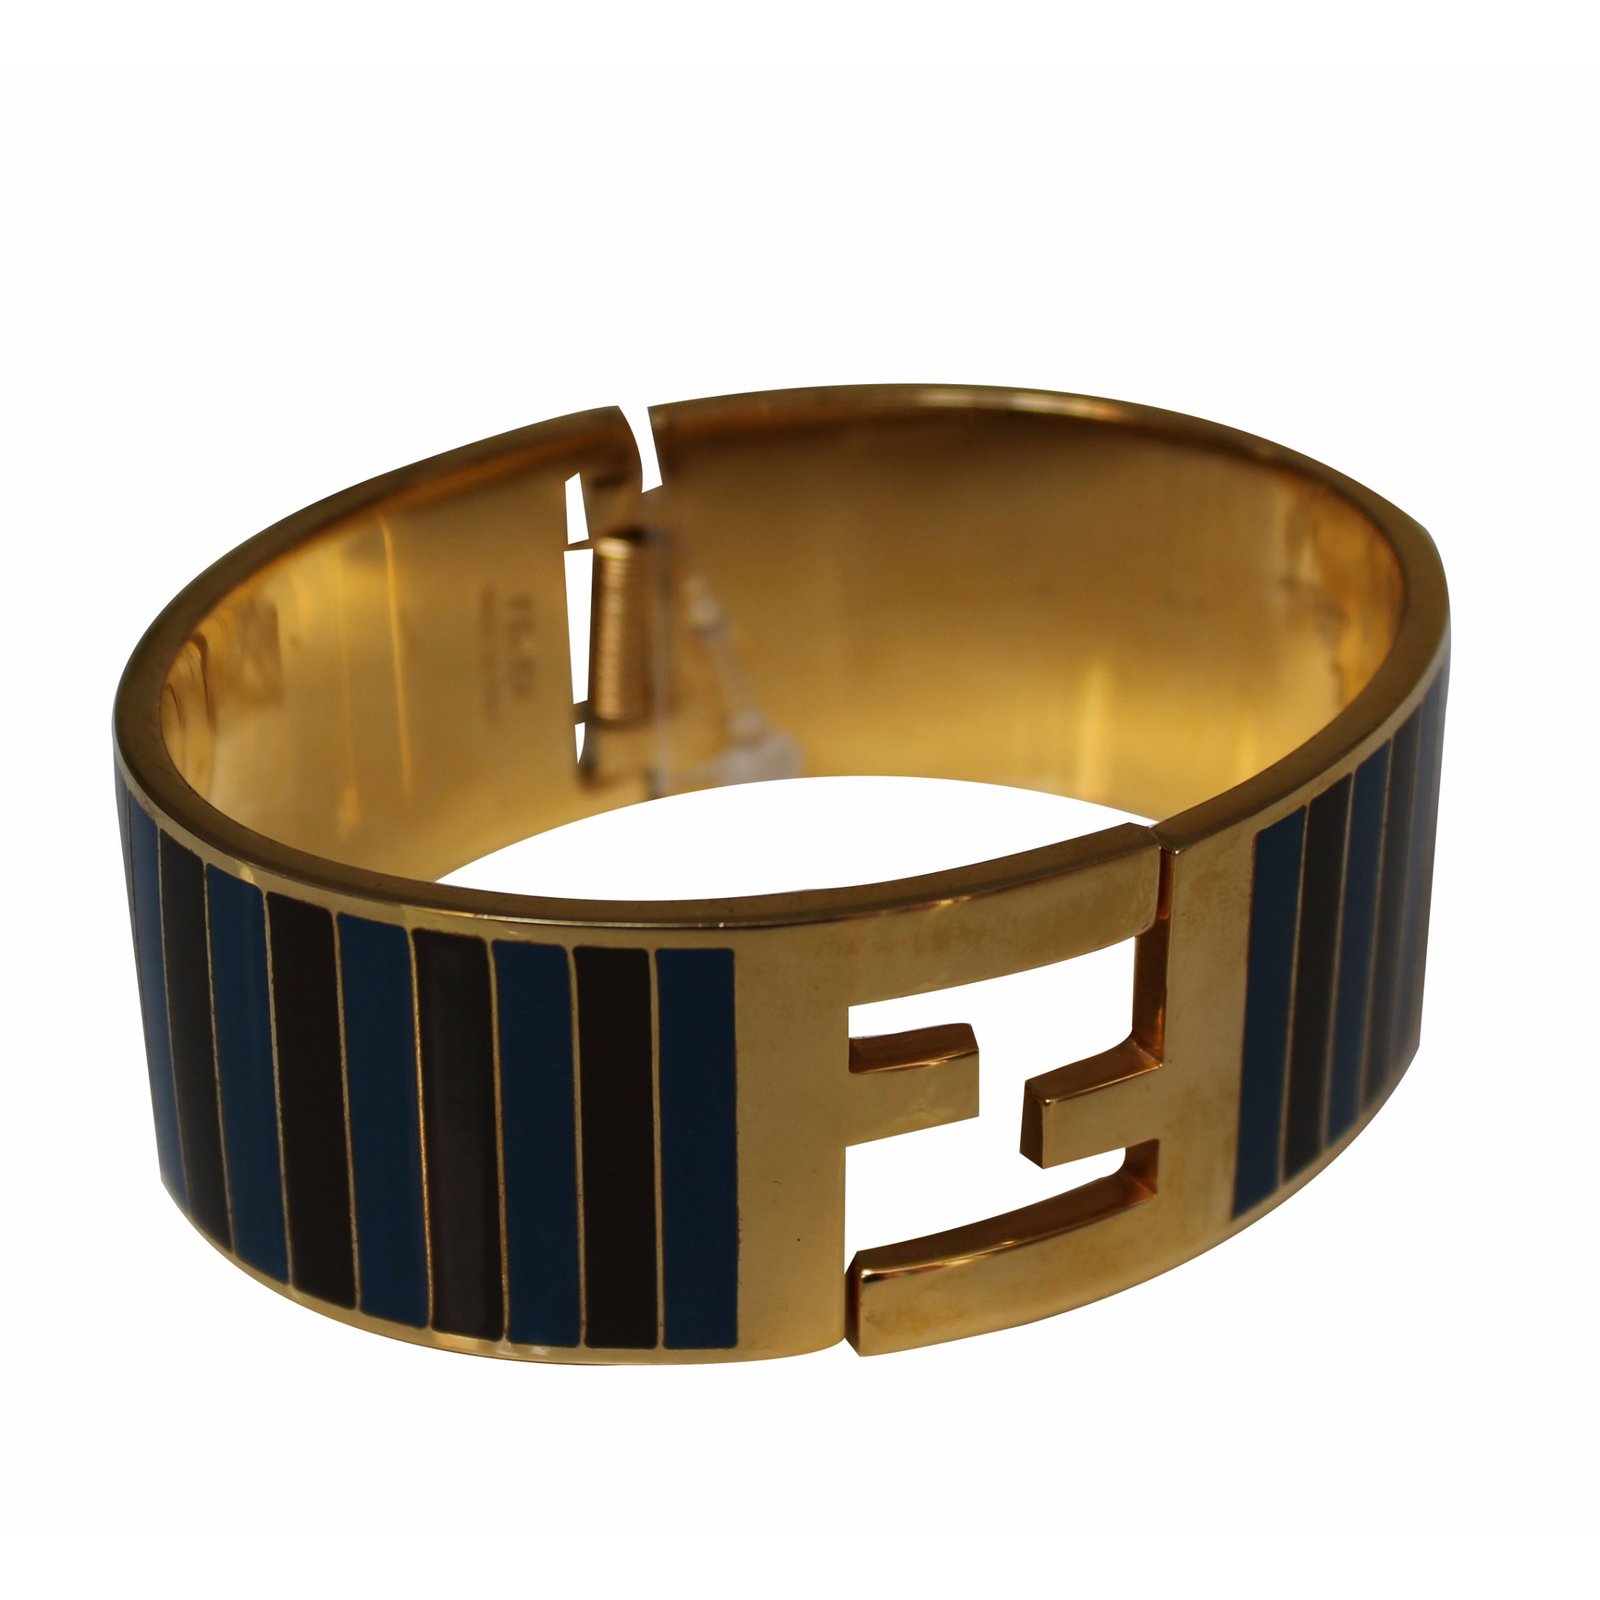 Fendi bracelet and ring, free size